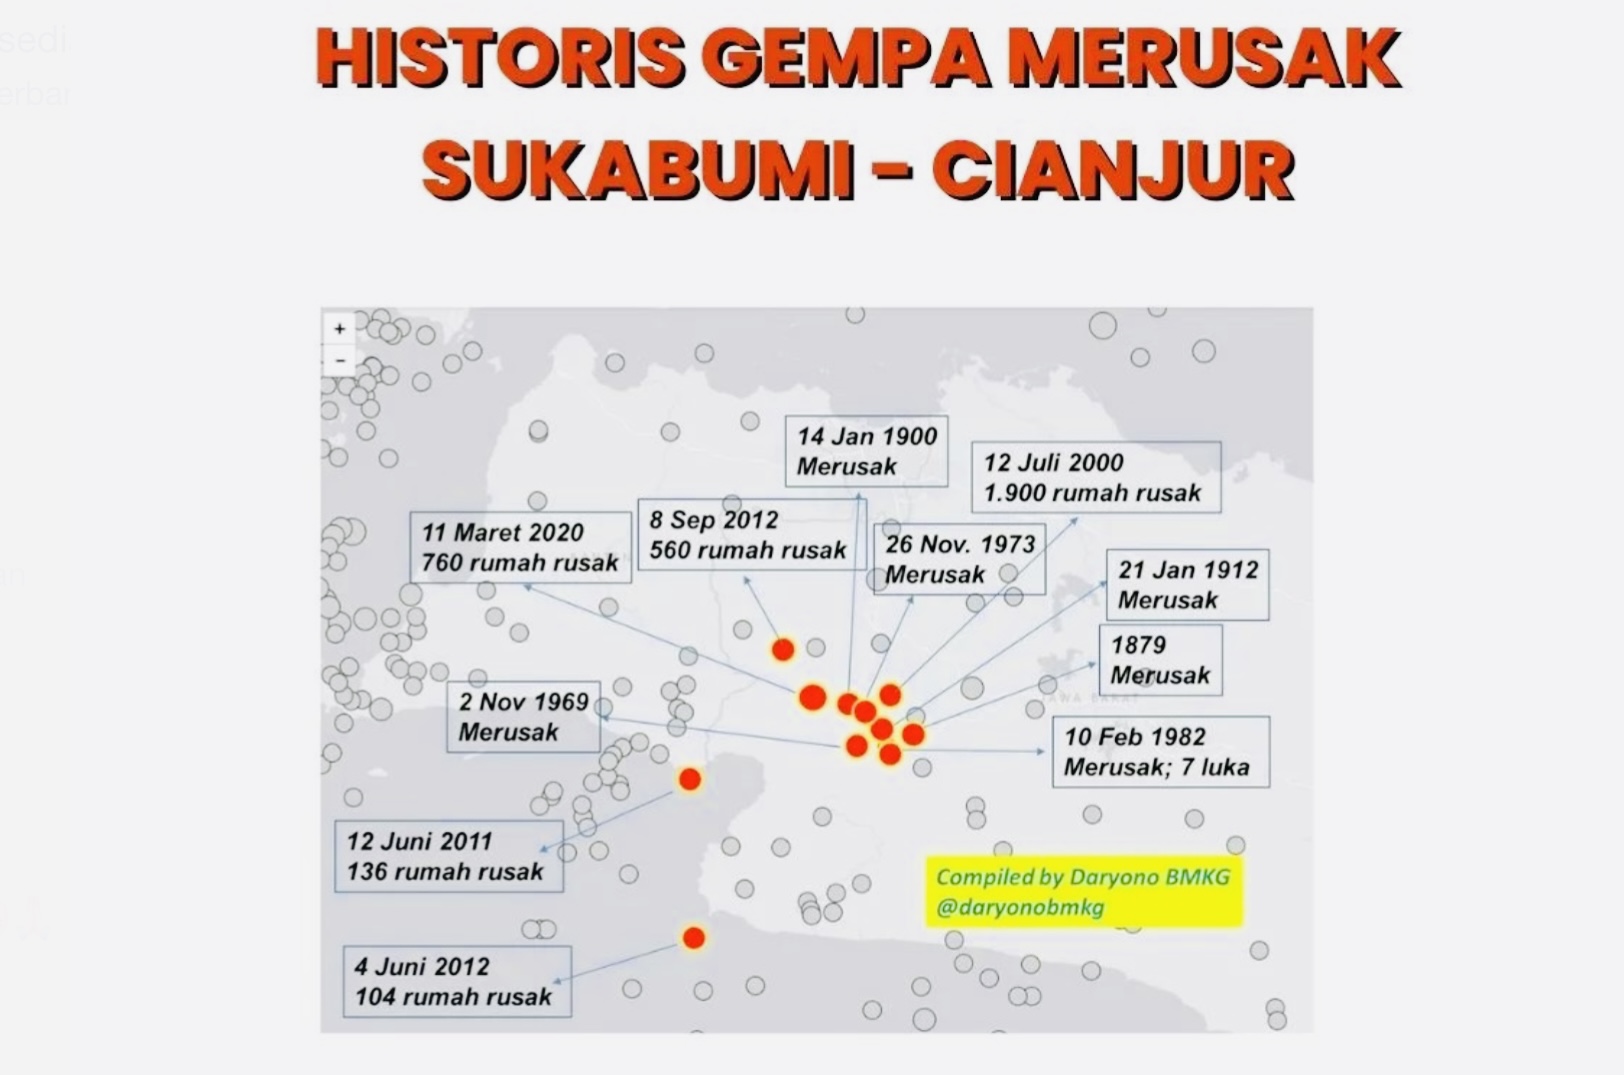 Cianjur-Sukabumi Pernah Diguncang Gempa Besar 11 Kali, Gempa Susulan Tercatat 370 Kali Per 2 Desember 2022